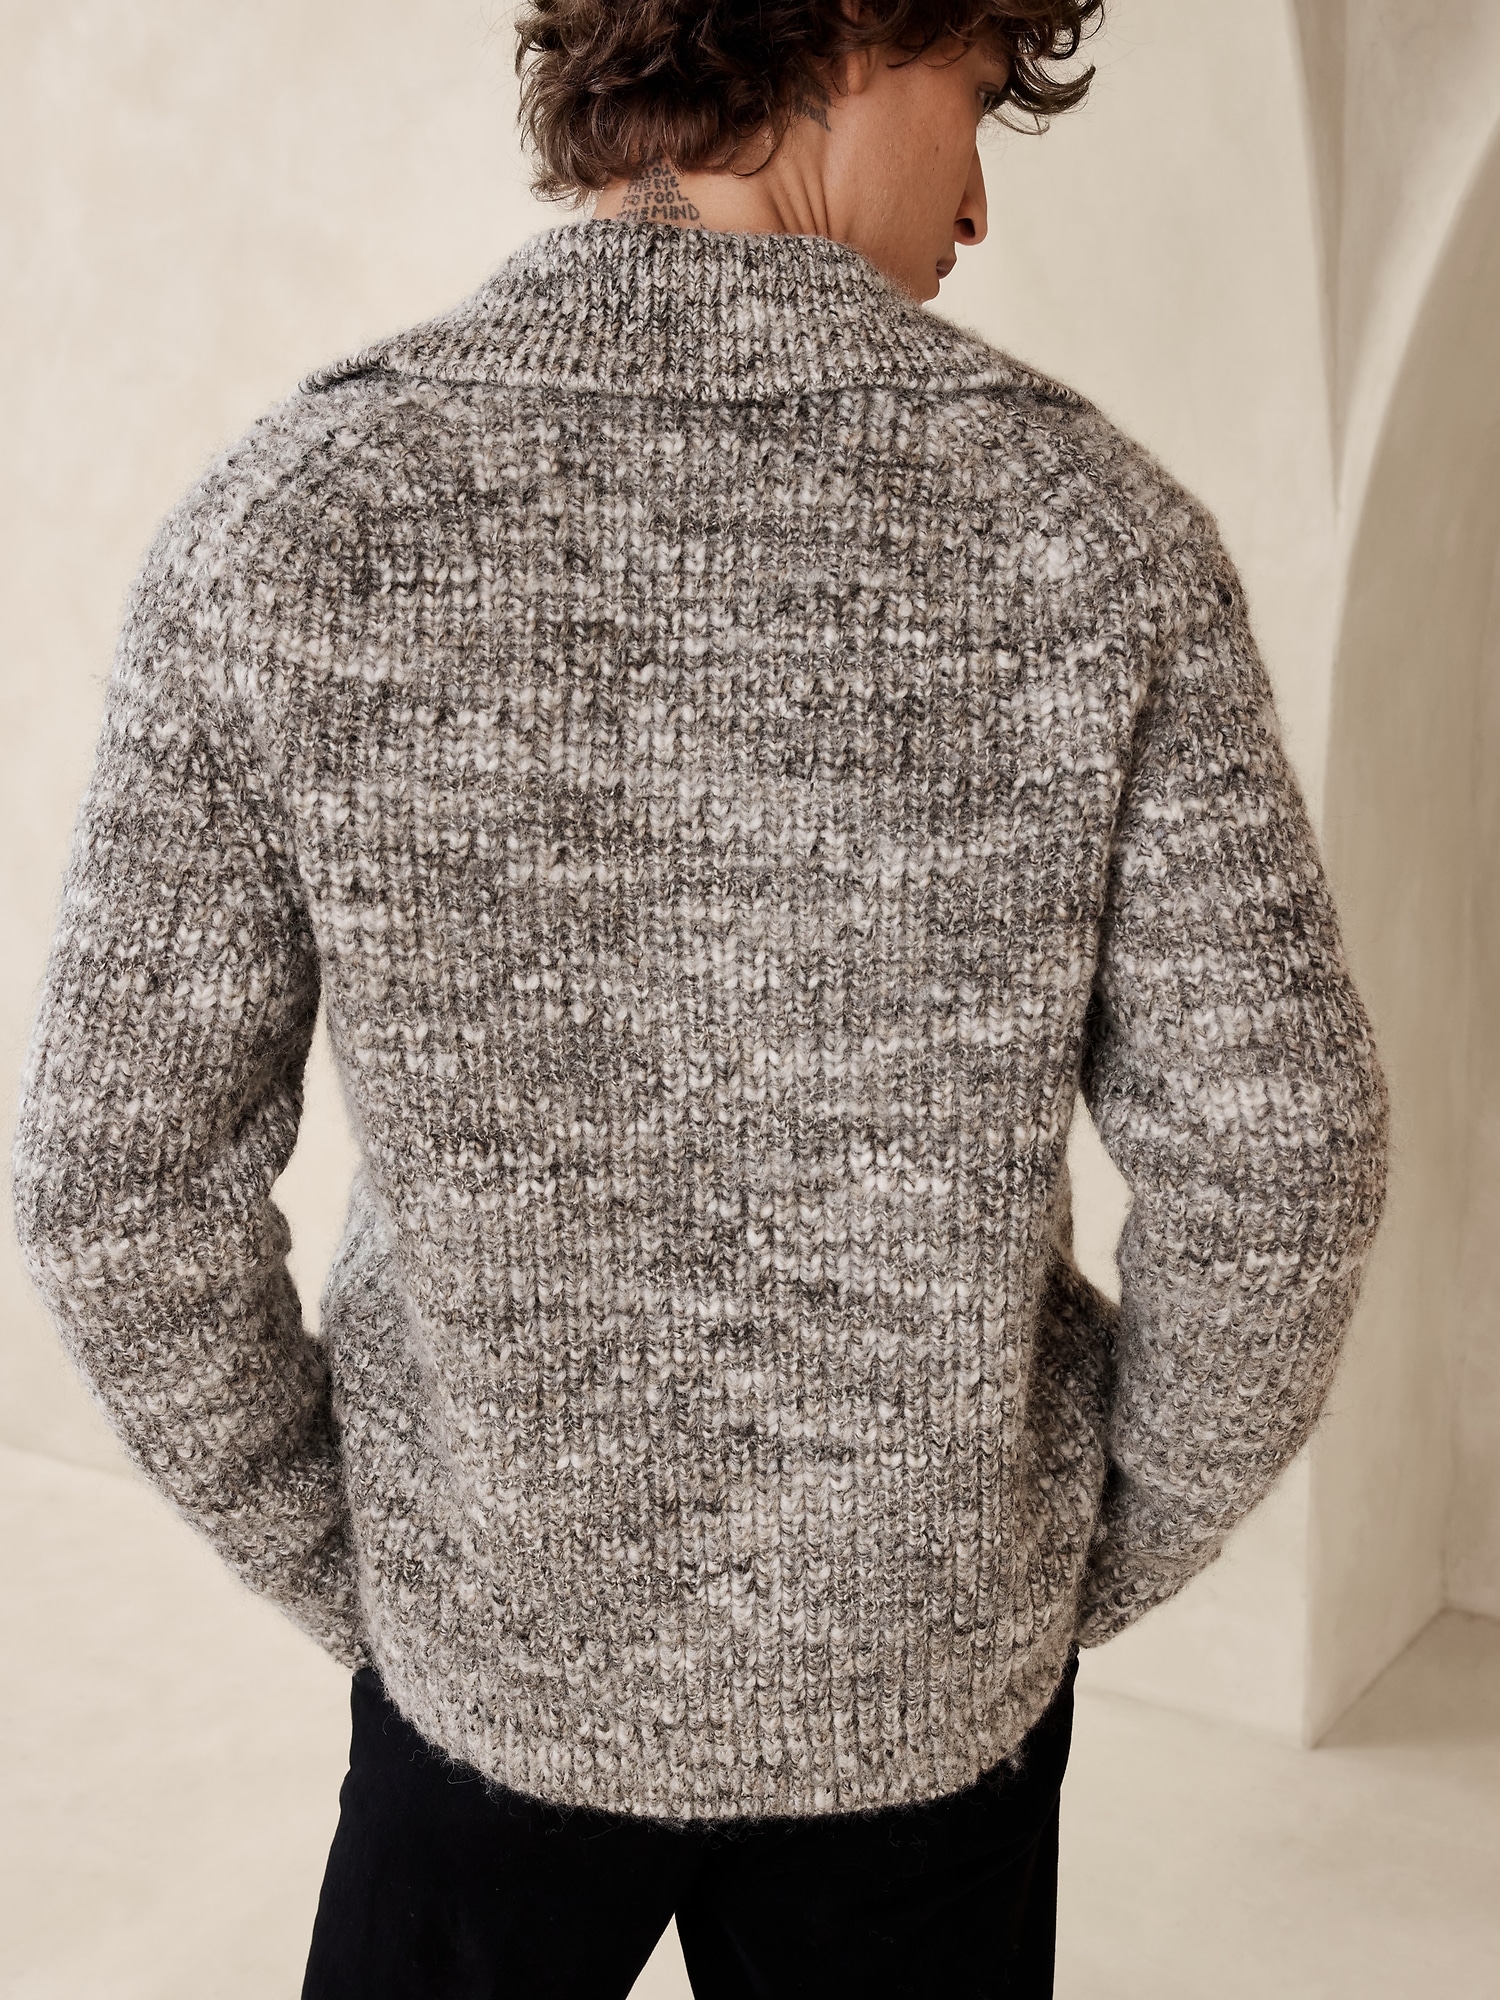 Alfi Cardigan Sweater